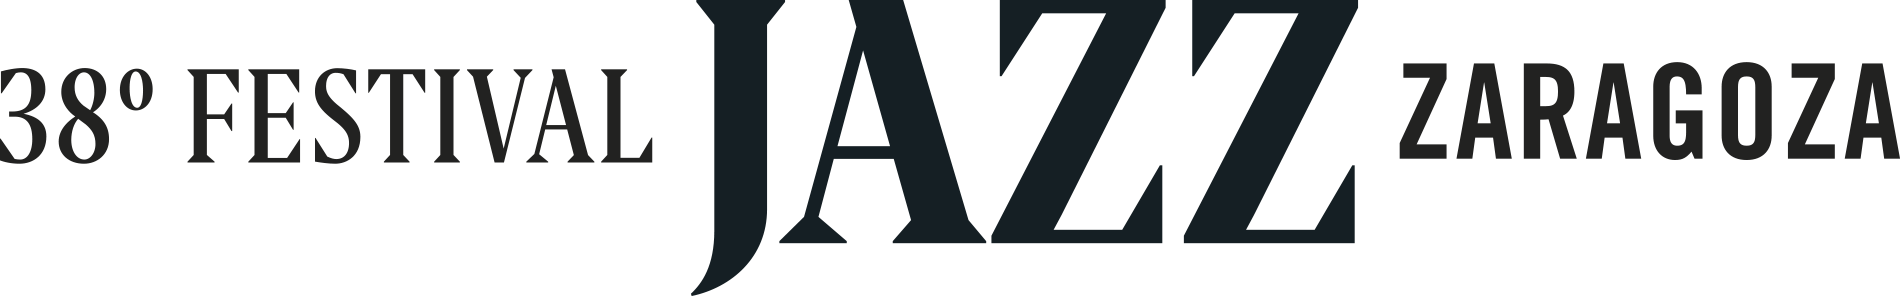 Zaragoza Jazz Festival